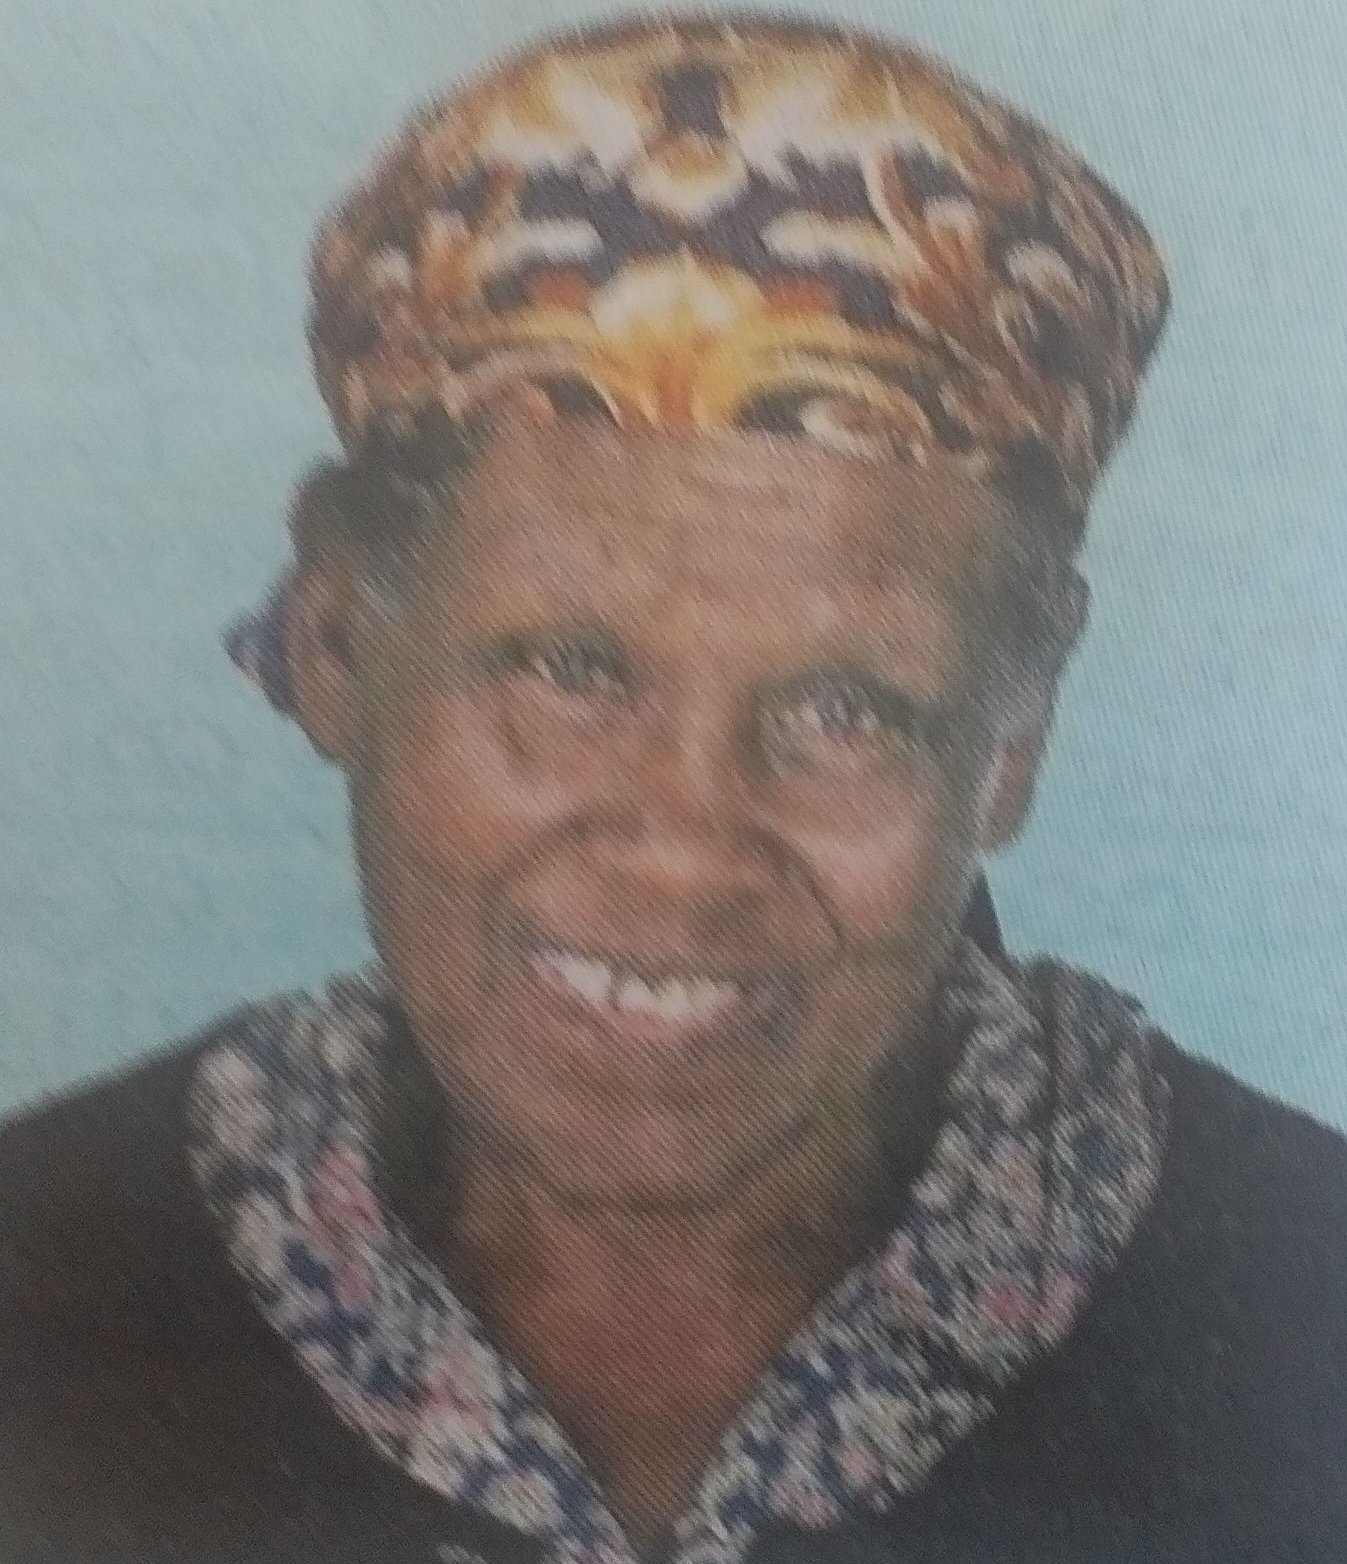 Obituary Image of Dada Rose Cecilia Wali Mwapaga.